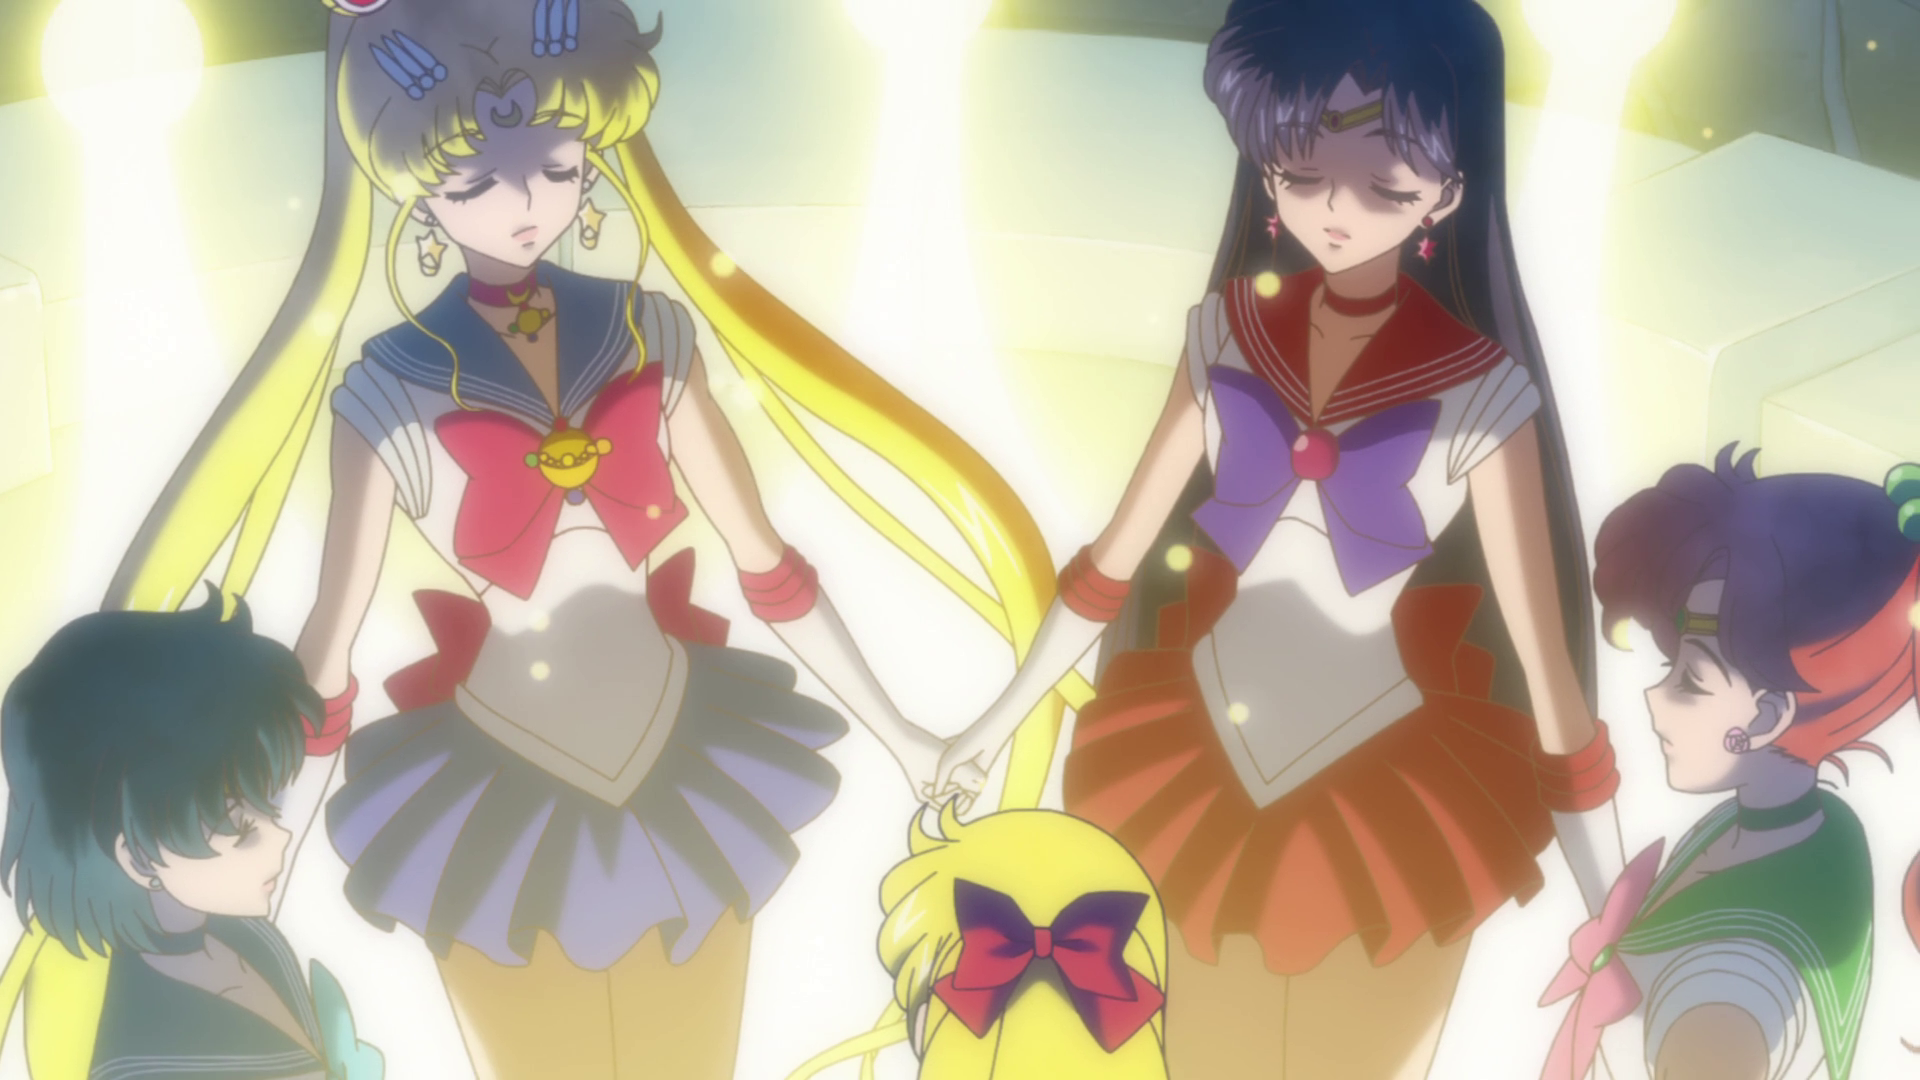 The Sailors teleport. ("Moon" - Sailor Moon Crystal S01E10)